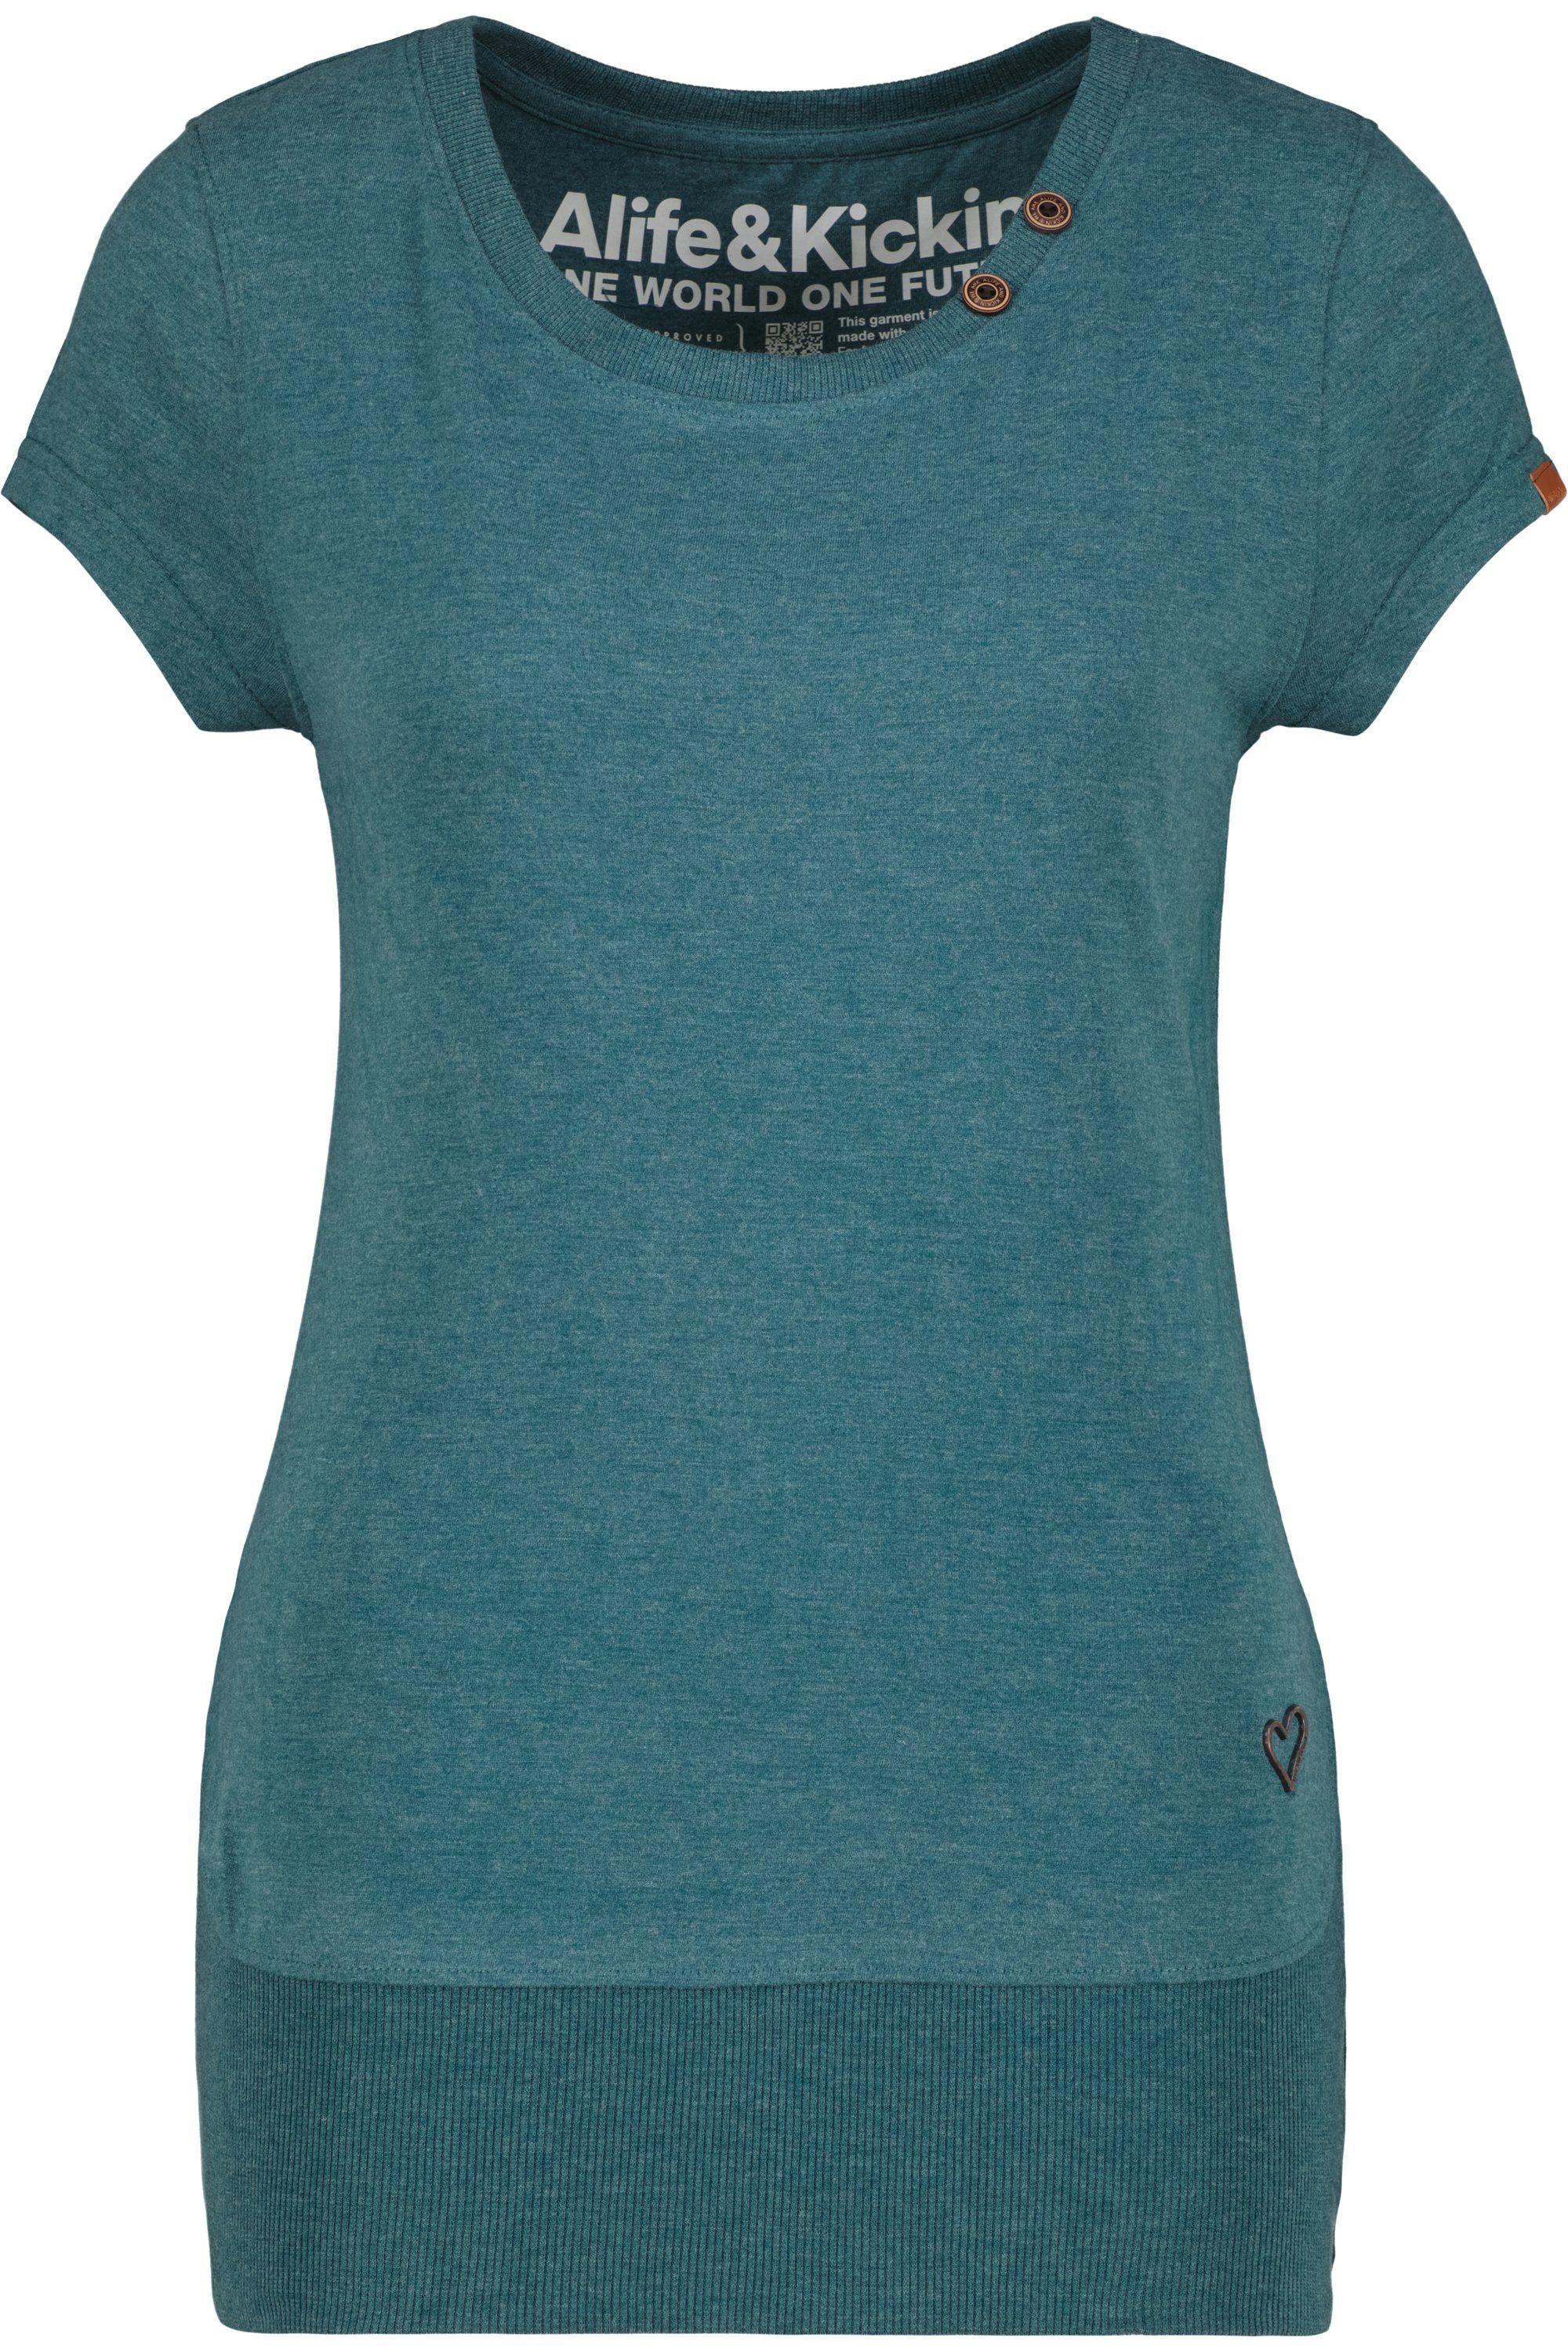 Alife T-Shirt CocoAK melange & Kickin forest T-Shirt A Damen Shirt